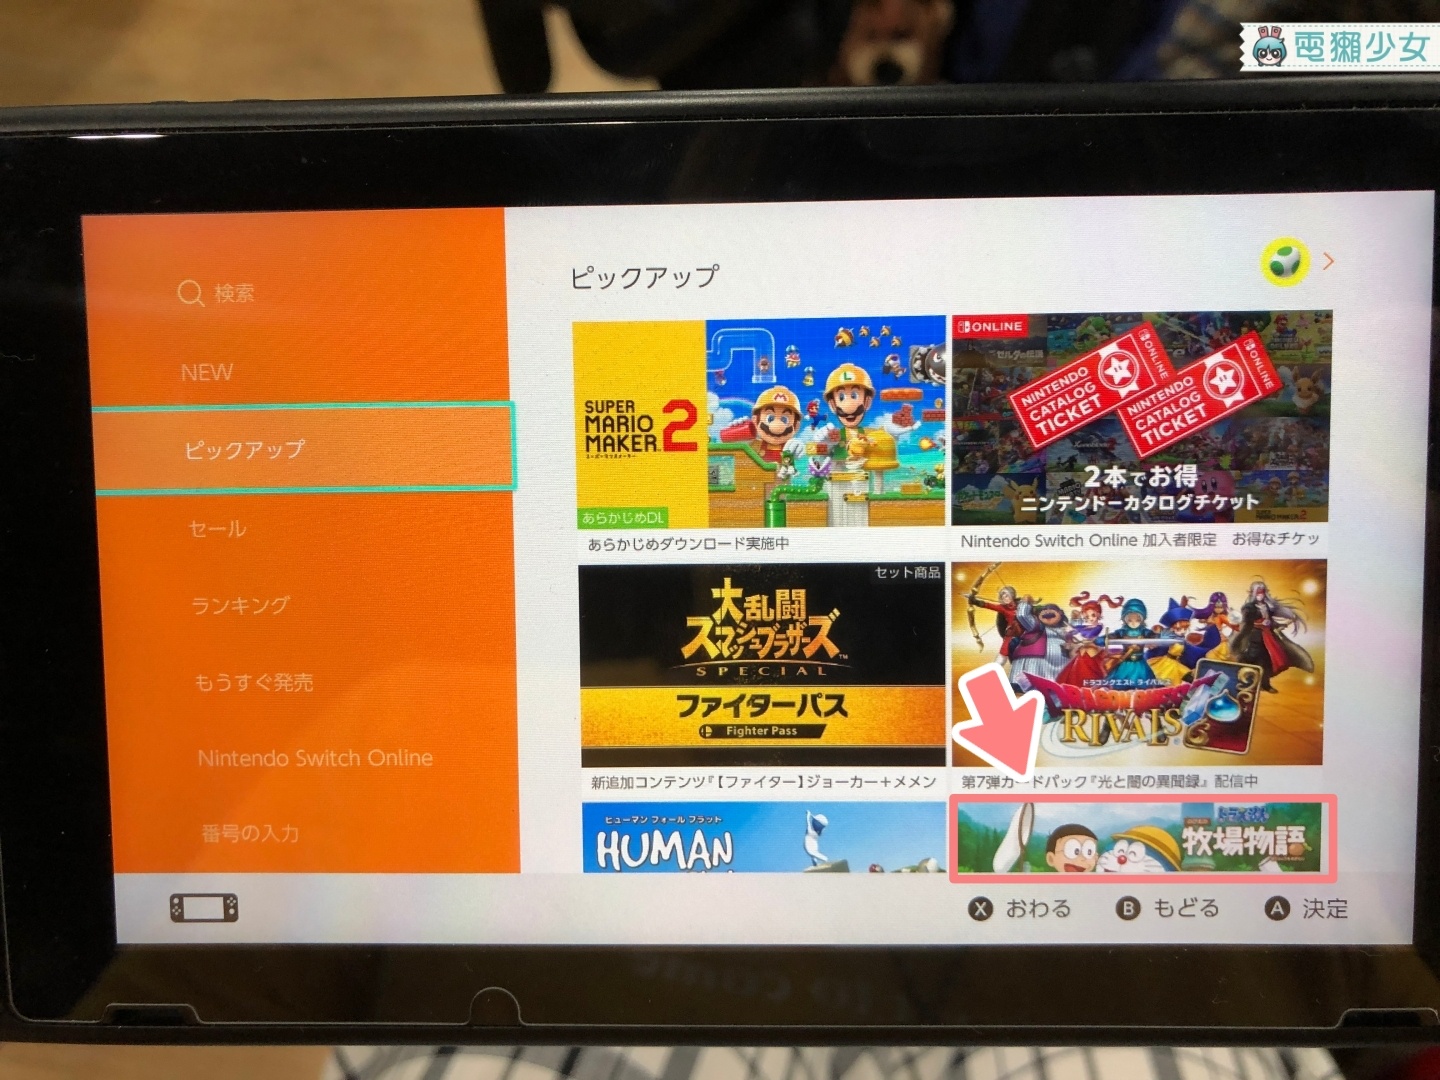 《哆啦A夢 牧場物語》釋出免費體驗版 Switch搶先試玩 預計7/25發售繁體中文版